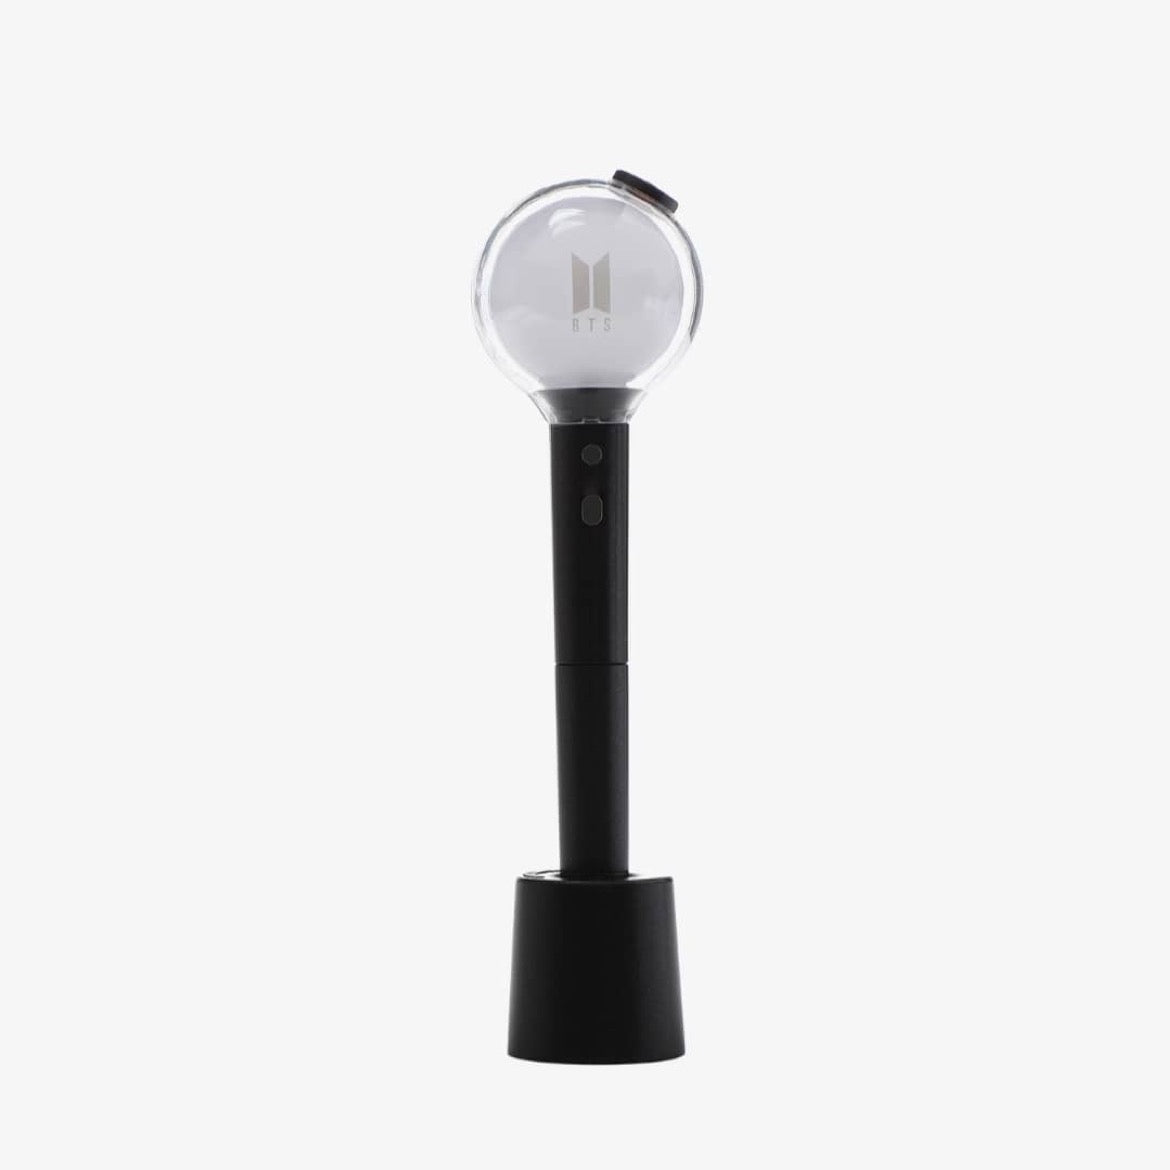 BTS Official lightstick pen SE version